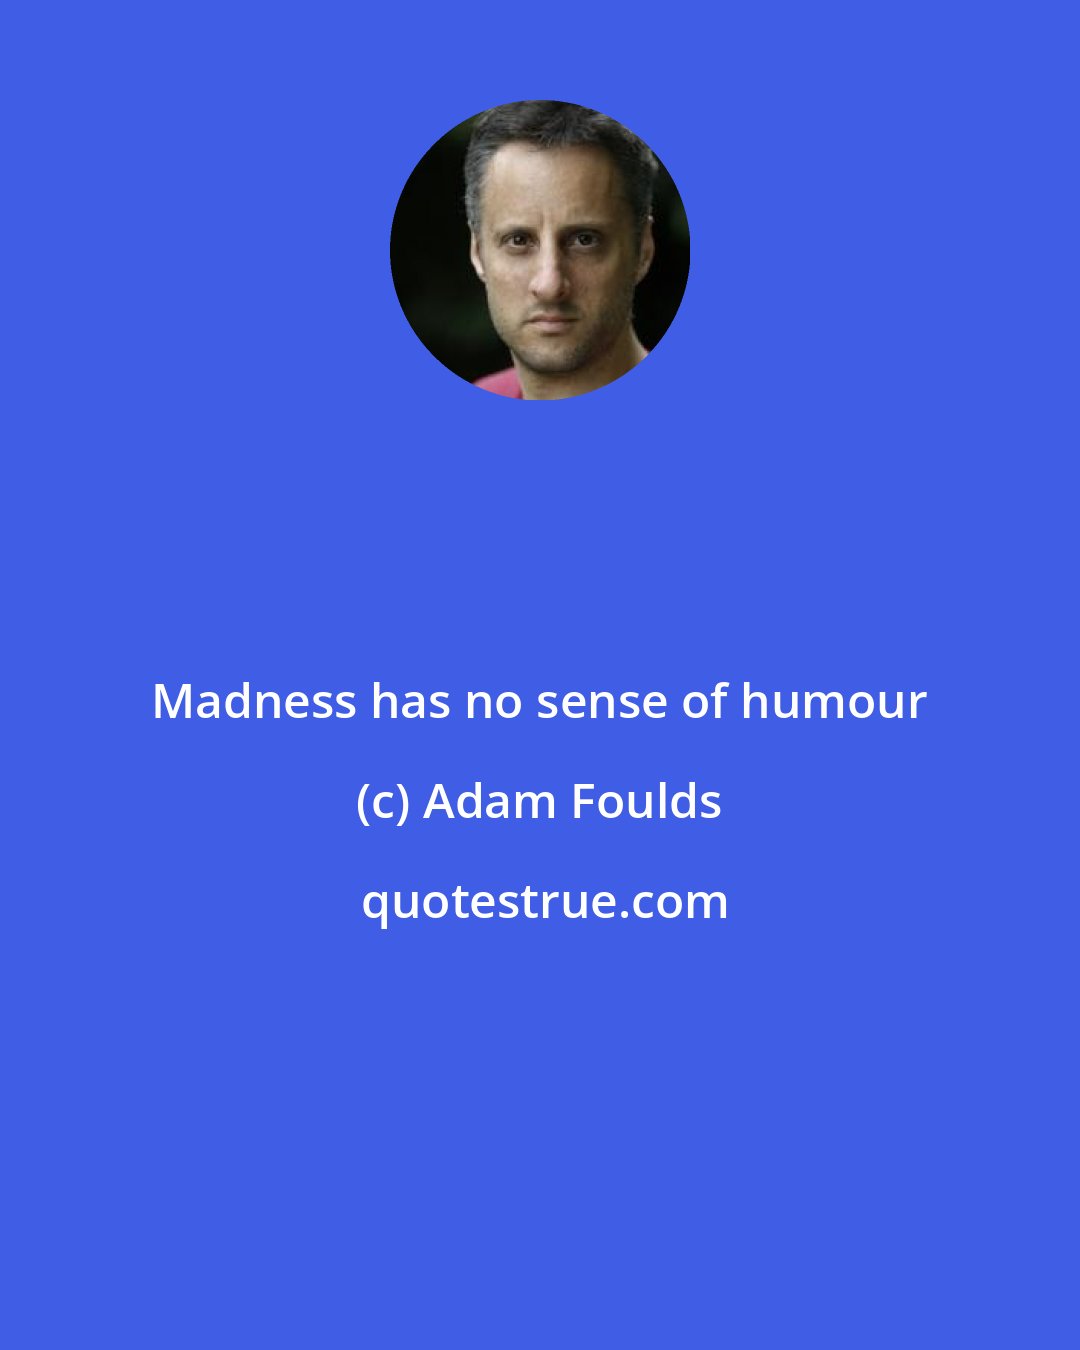 Adam Foulds: Madness has no sense of humour